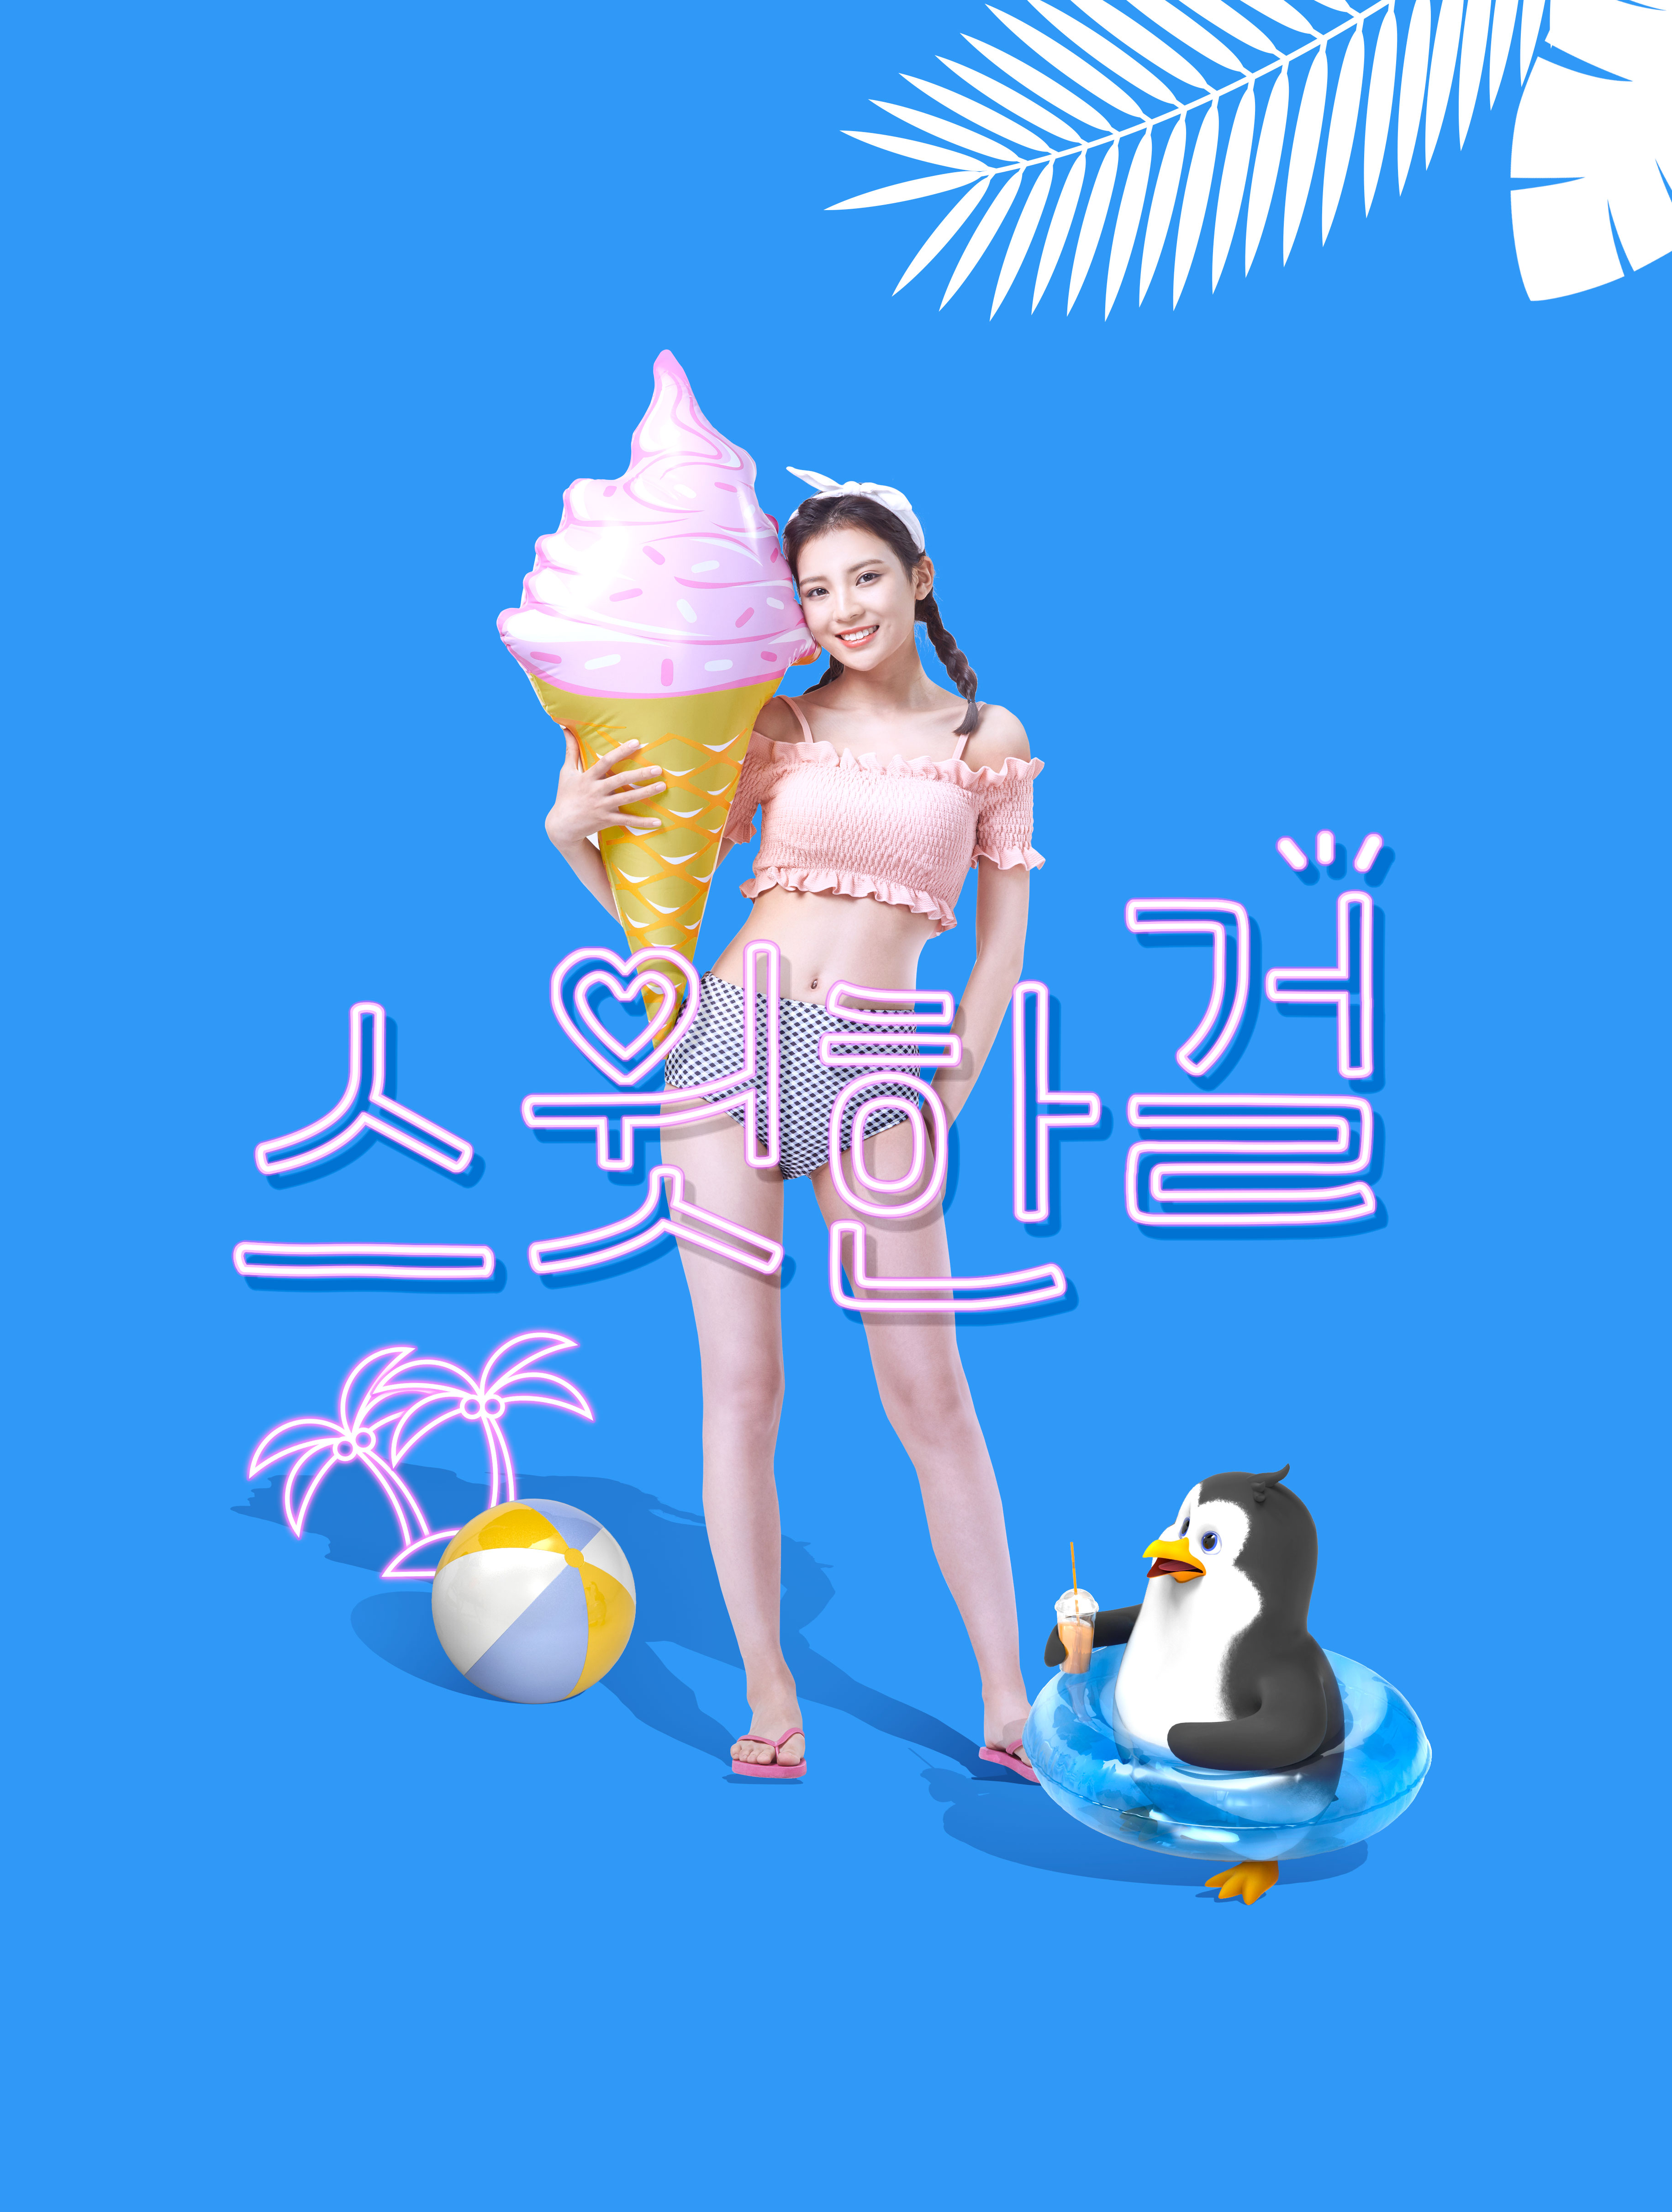 酷暑夏季度假活动广告海报设计套装[PSD]插图(5)